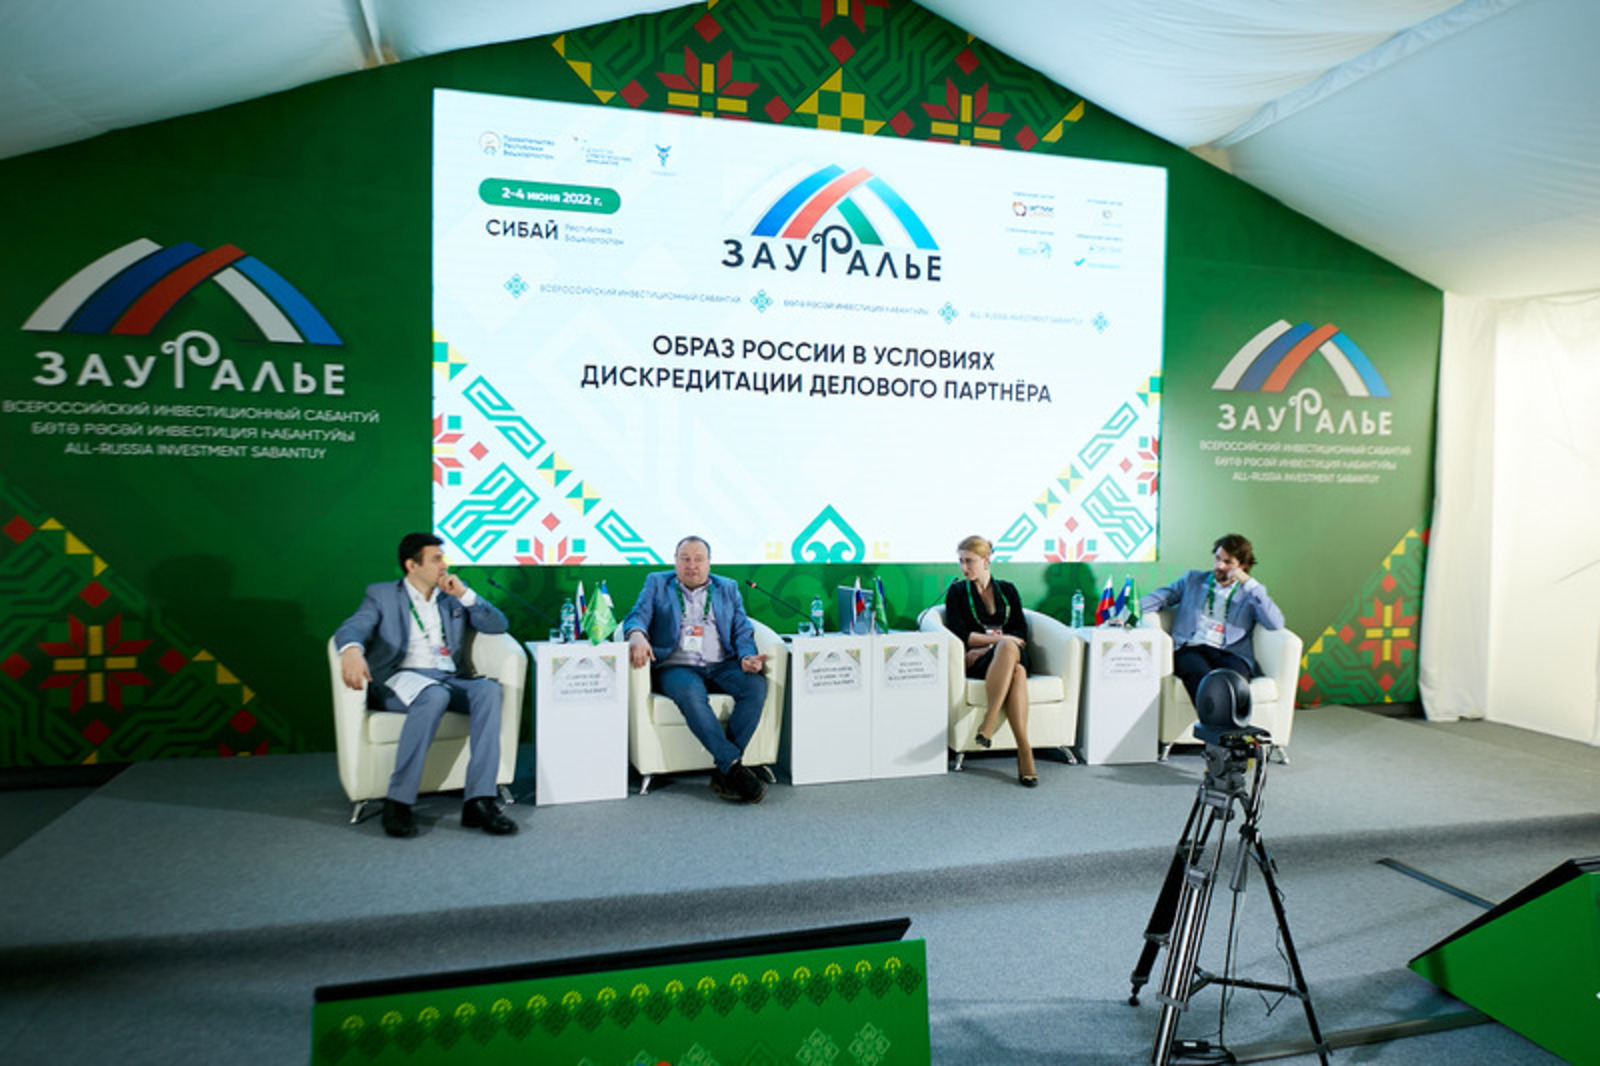 3 июня на инвестсабантуе состоялась сессия «Образ России в условиях дискредитации делового партнера»